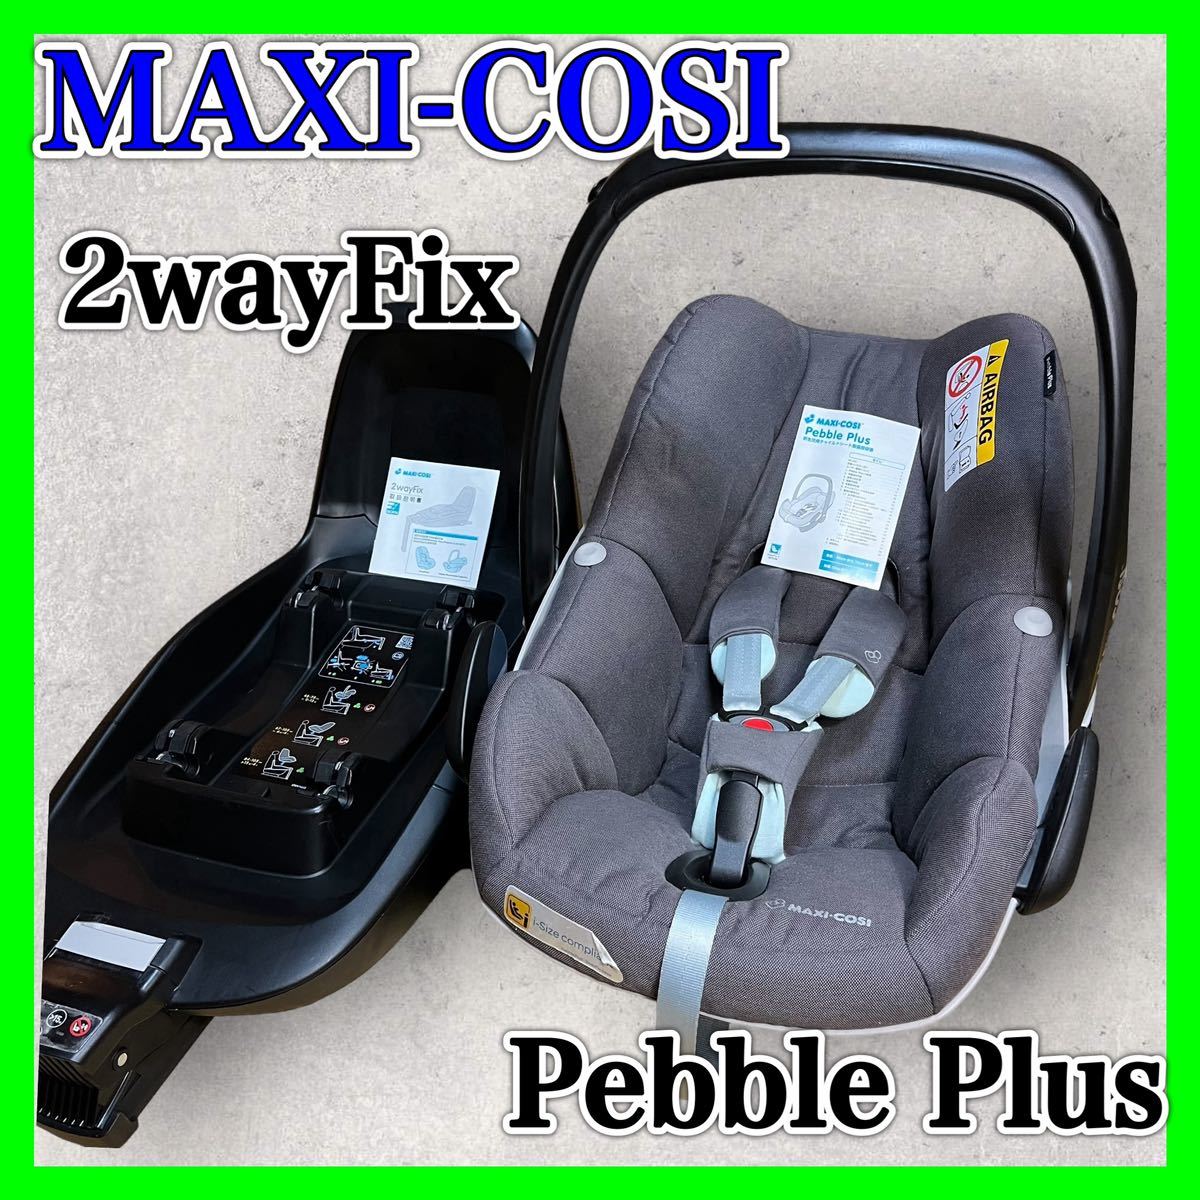 Maxi-cosiマキシコシペブルプラス Pebble Plus 2wayFix - チャイルドシート